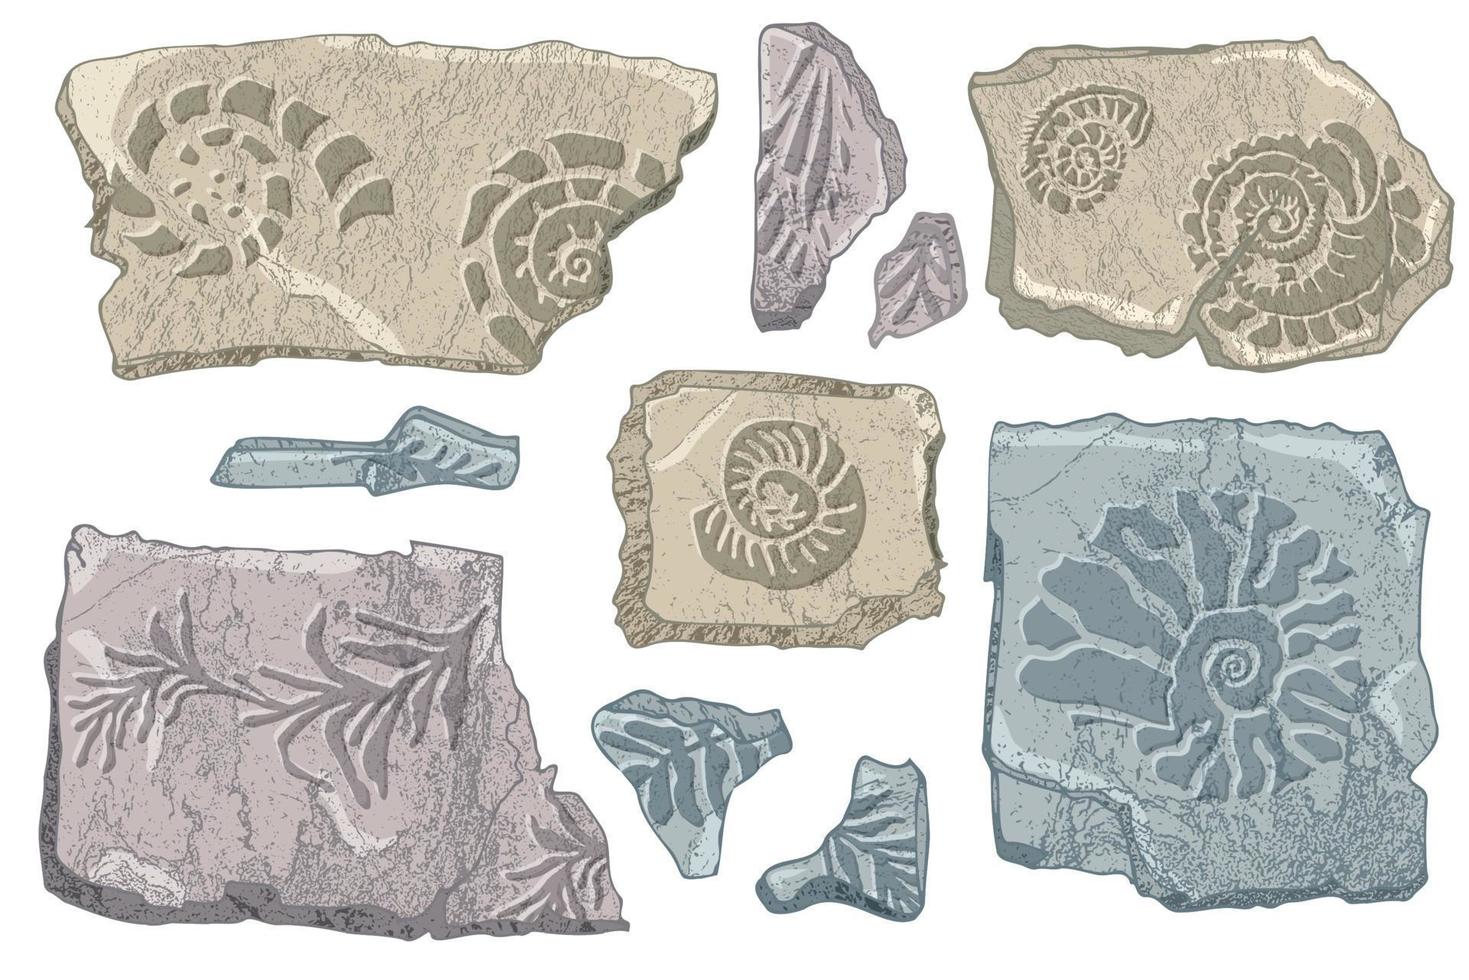 uppsättning av stenar snäckskal och växter hand dragen hav skal eller trumpetsnäcka mollusk kammussla hav under vattnet djur- fossil nautisk och akvarium, marin tema. vektor illustration